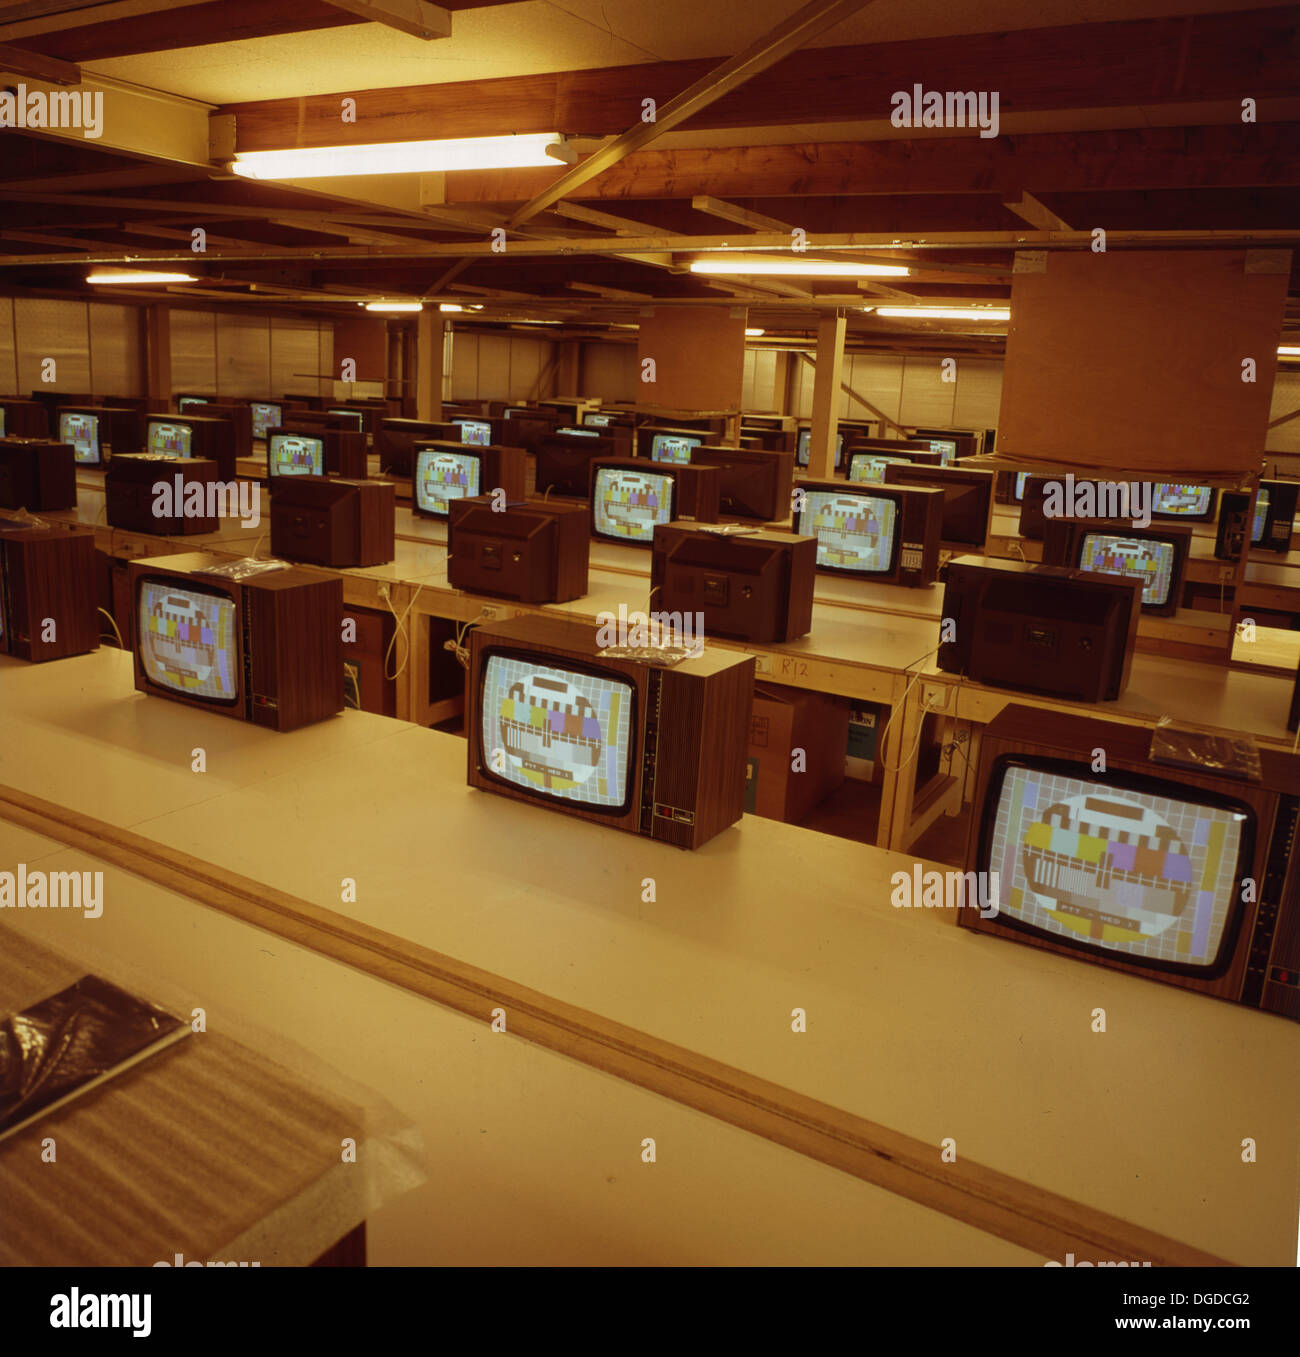 Dans les années 1960, les téléviseurs de l'époque assis sur des bureaux sont testés, tous montrant le modèle de test PM5544 : Common PAL. Le motif de test ou la carte de test s'affichait alors qu'aucun programme n'était diffusé. Banque D'Images